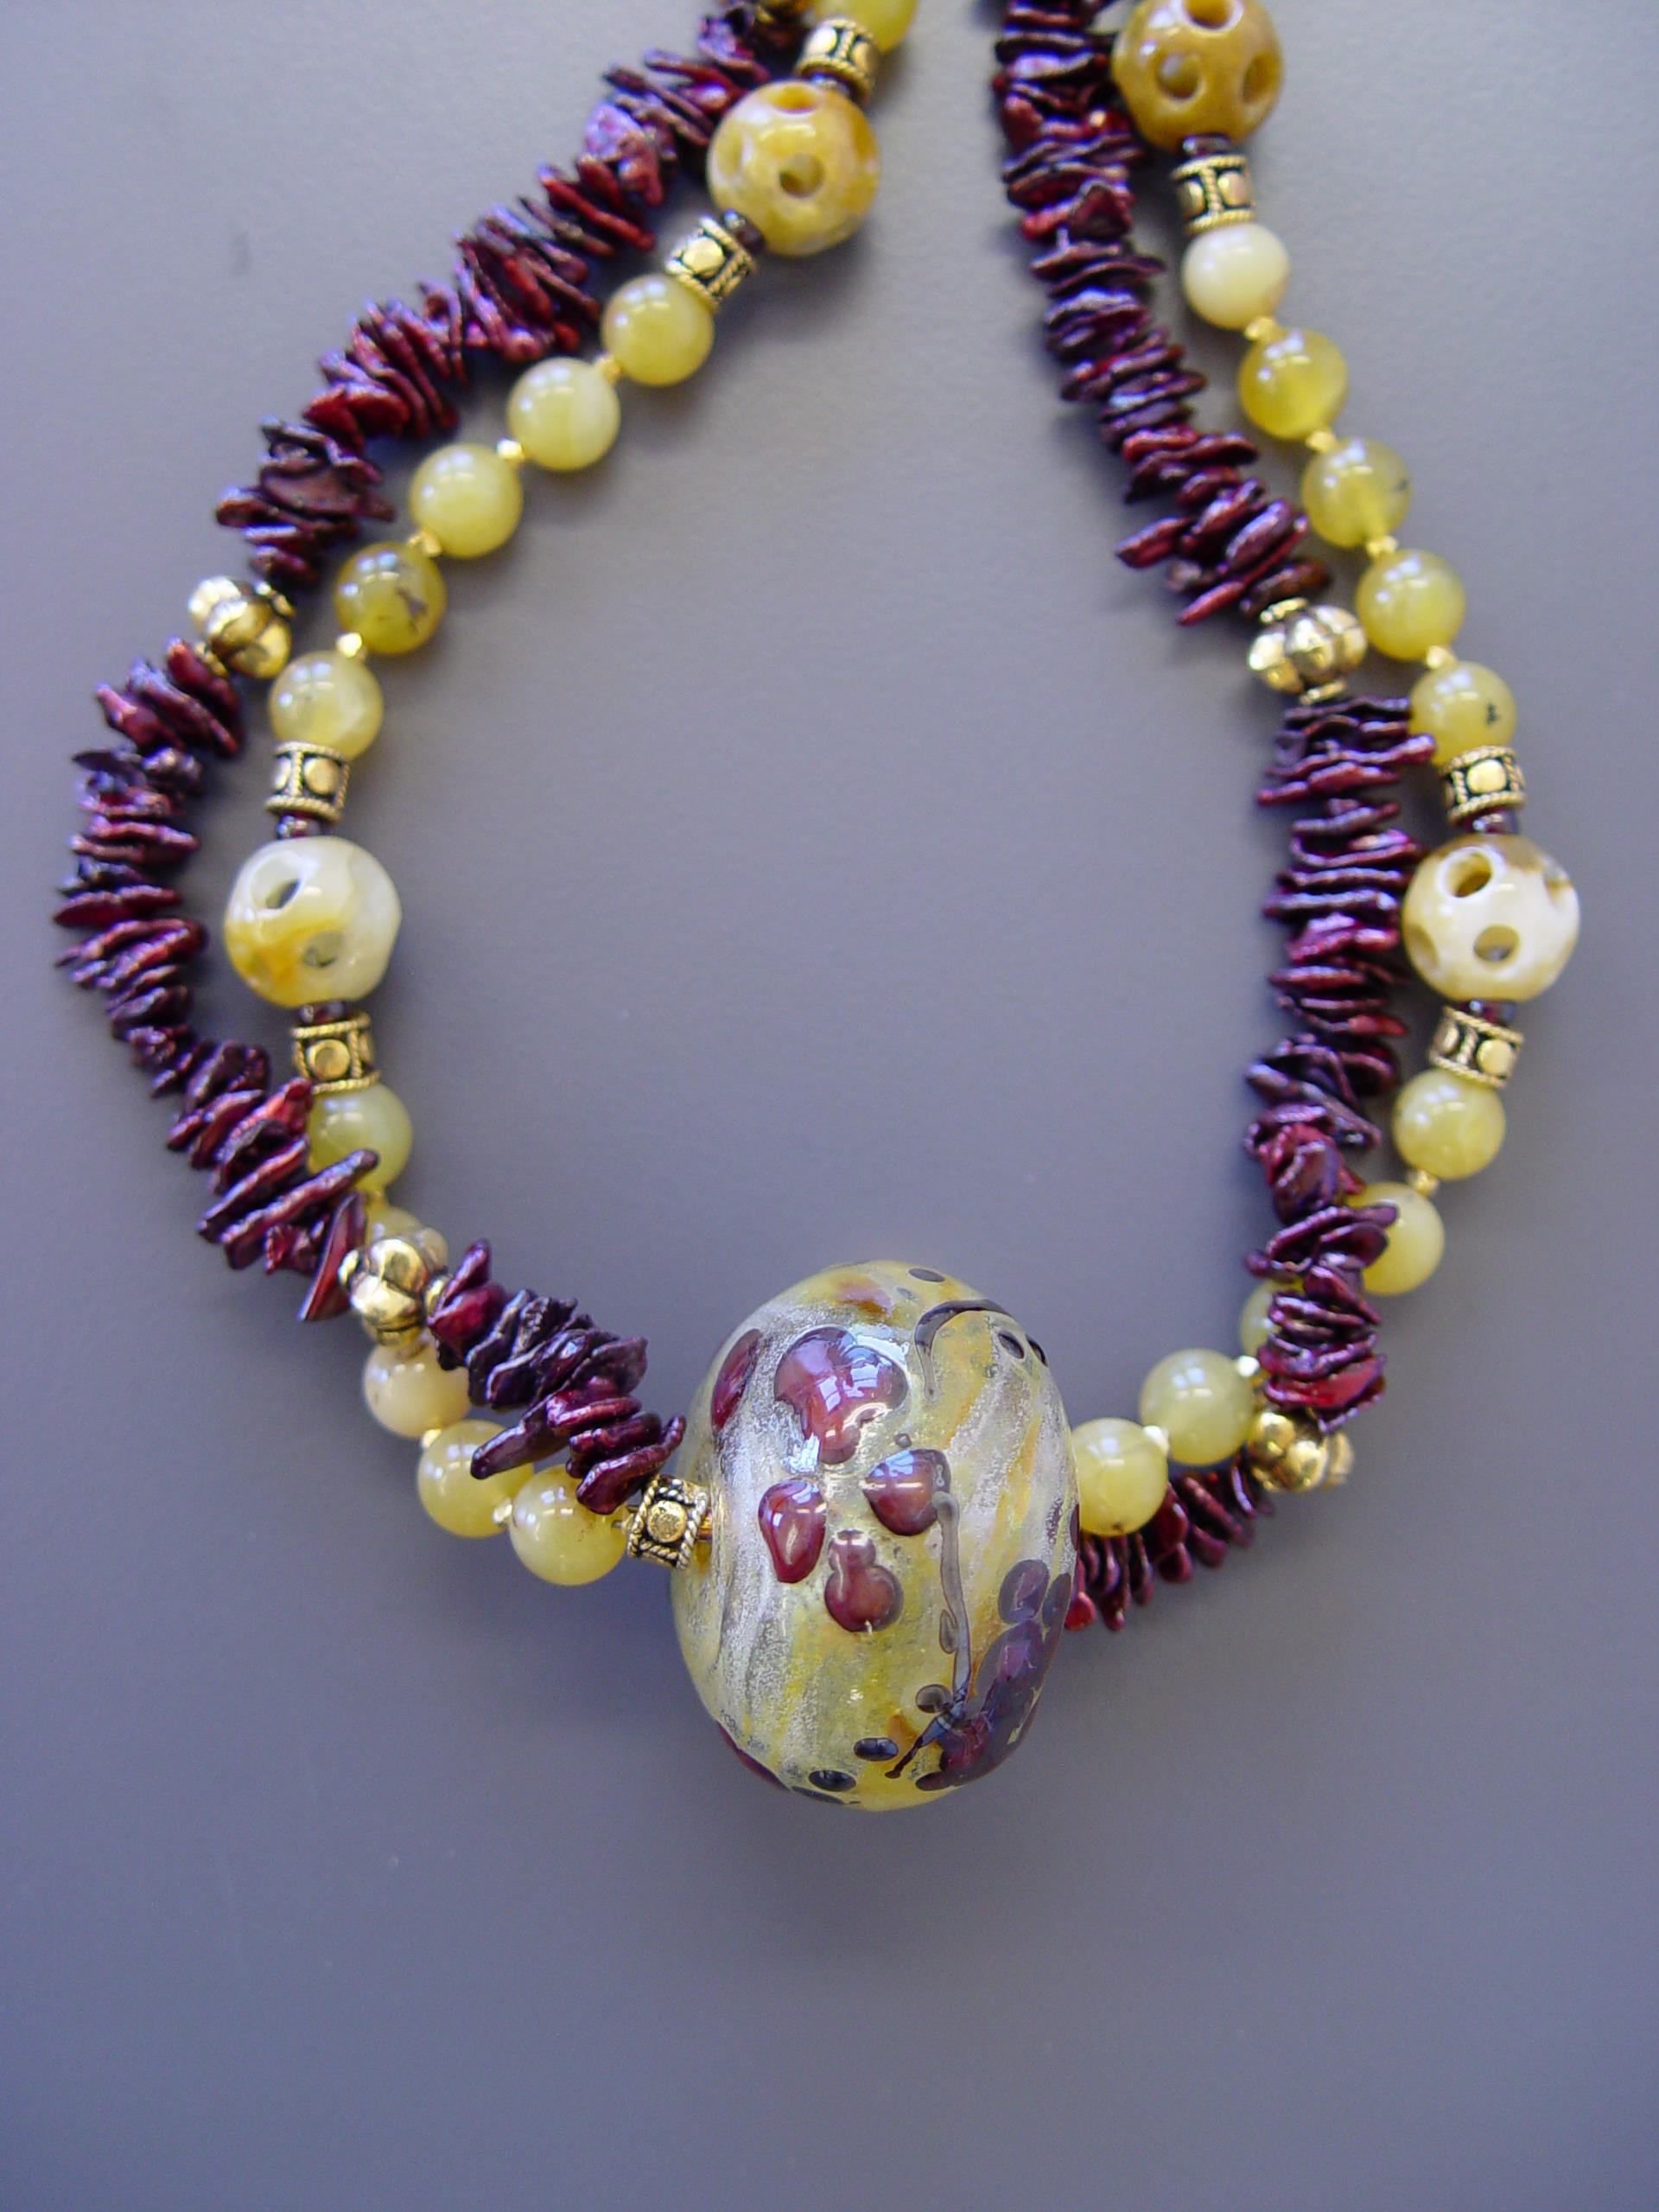 Detail of Garnet Vines Necklace